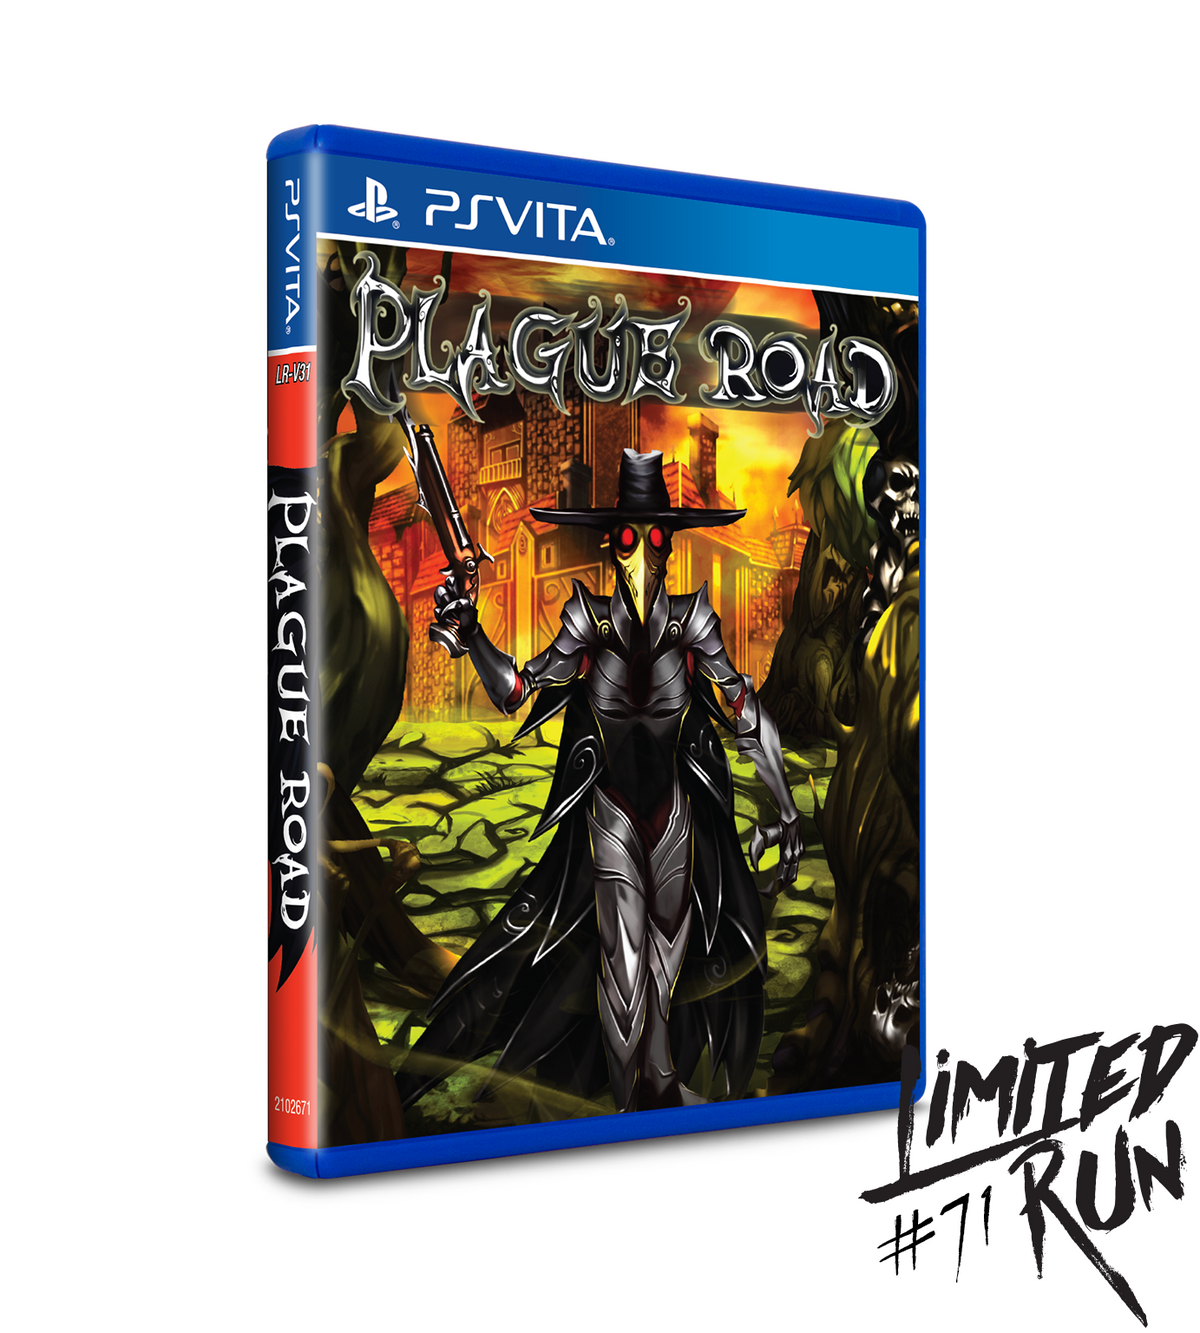 Limited Run #71: Plague Road (Vita)